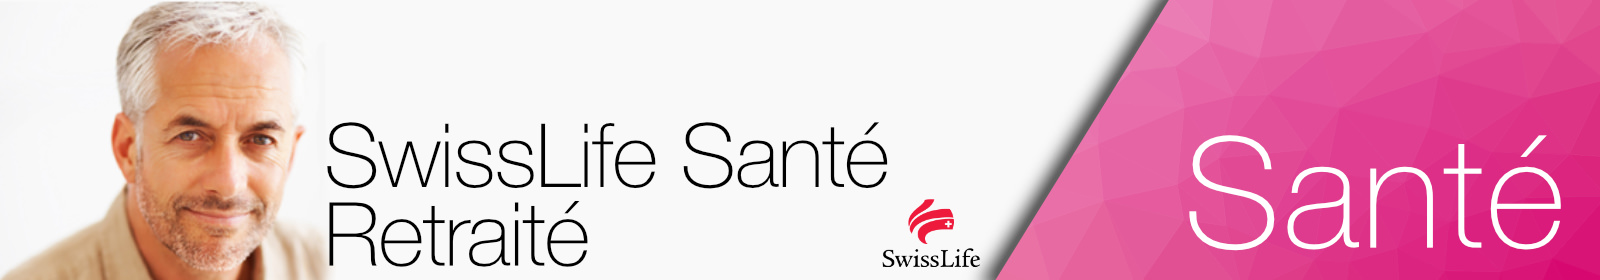 SwissLife Santé